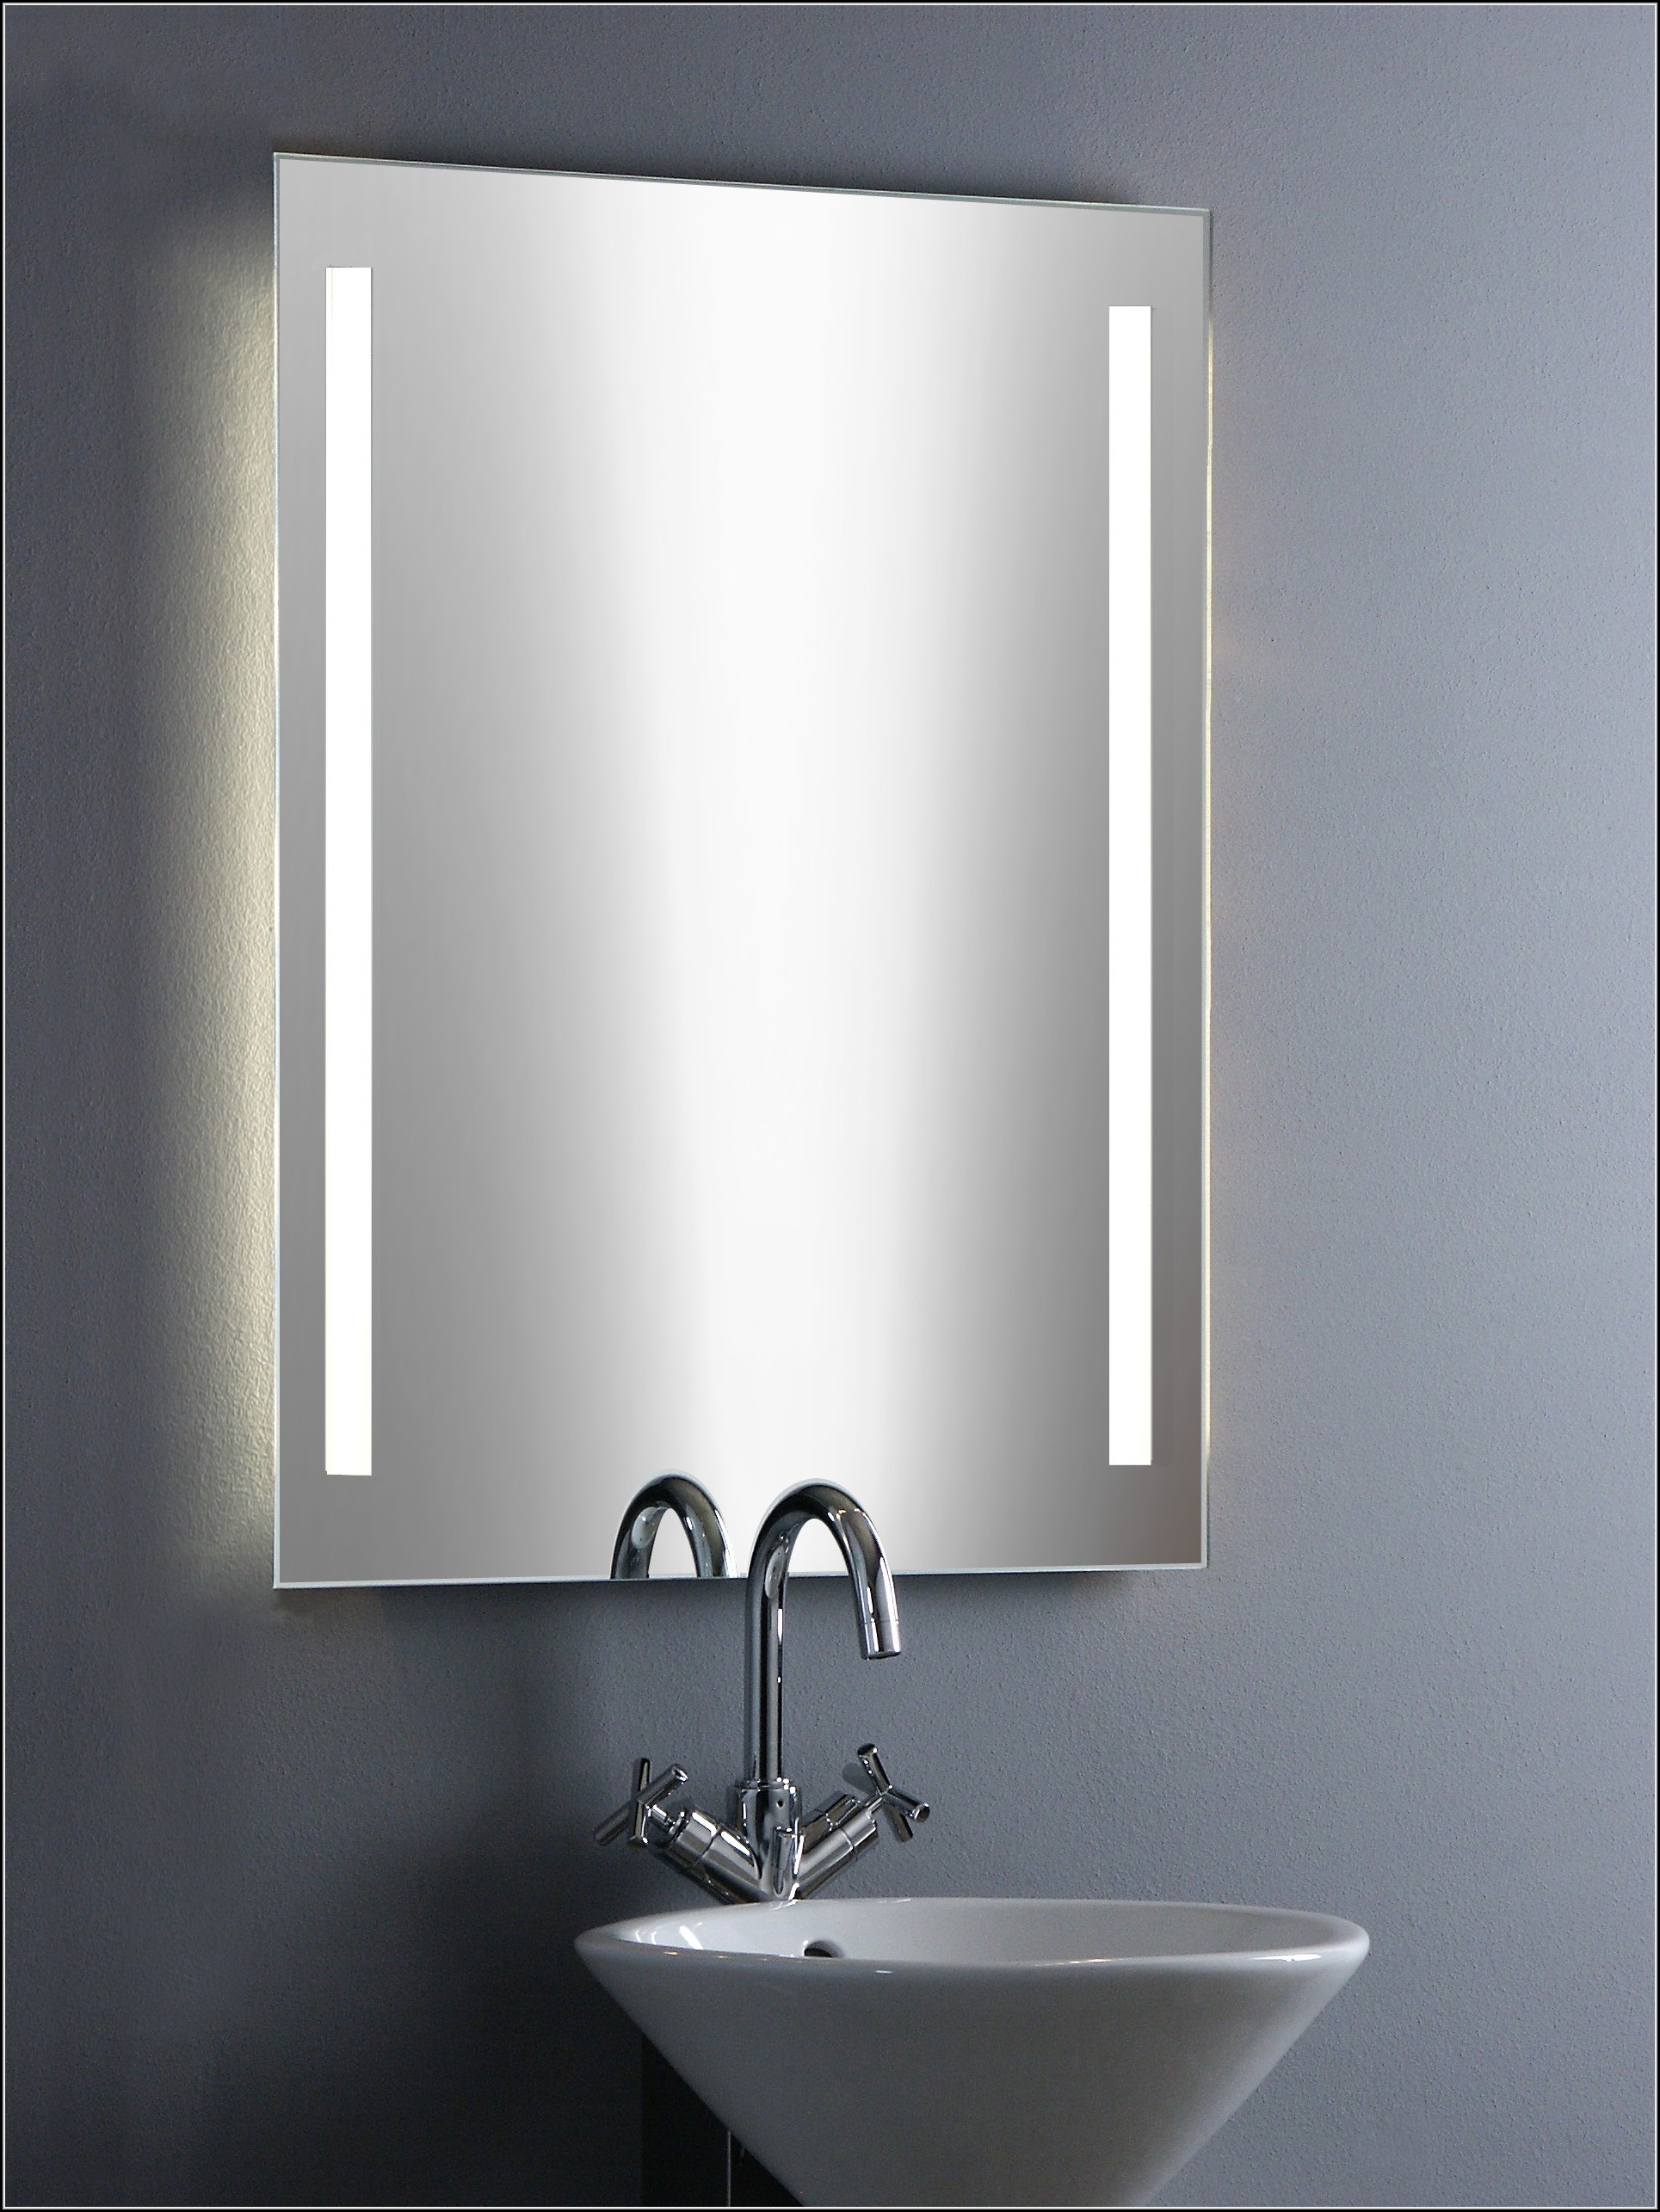 Spiegel Mit Beleuchtung Badezimmer